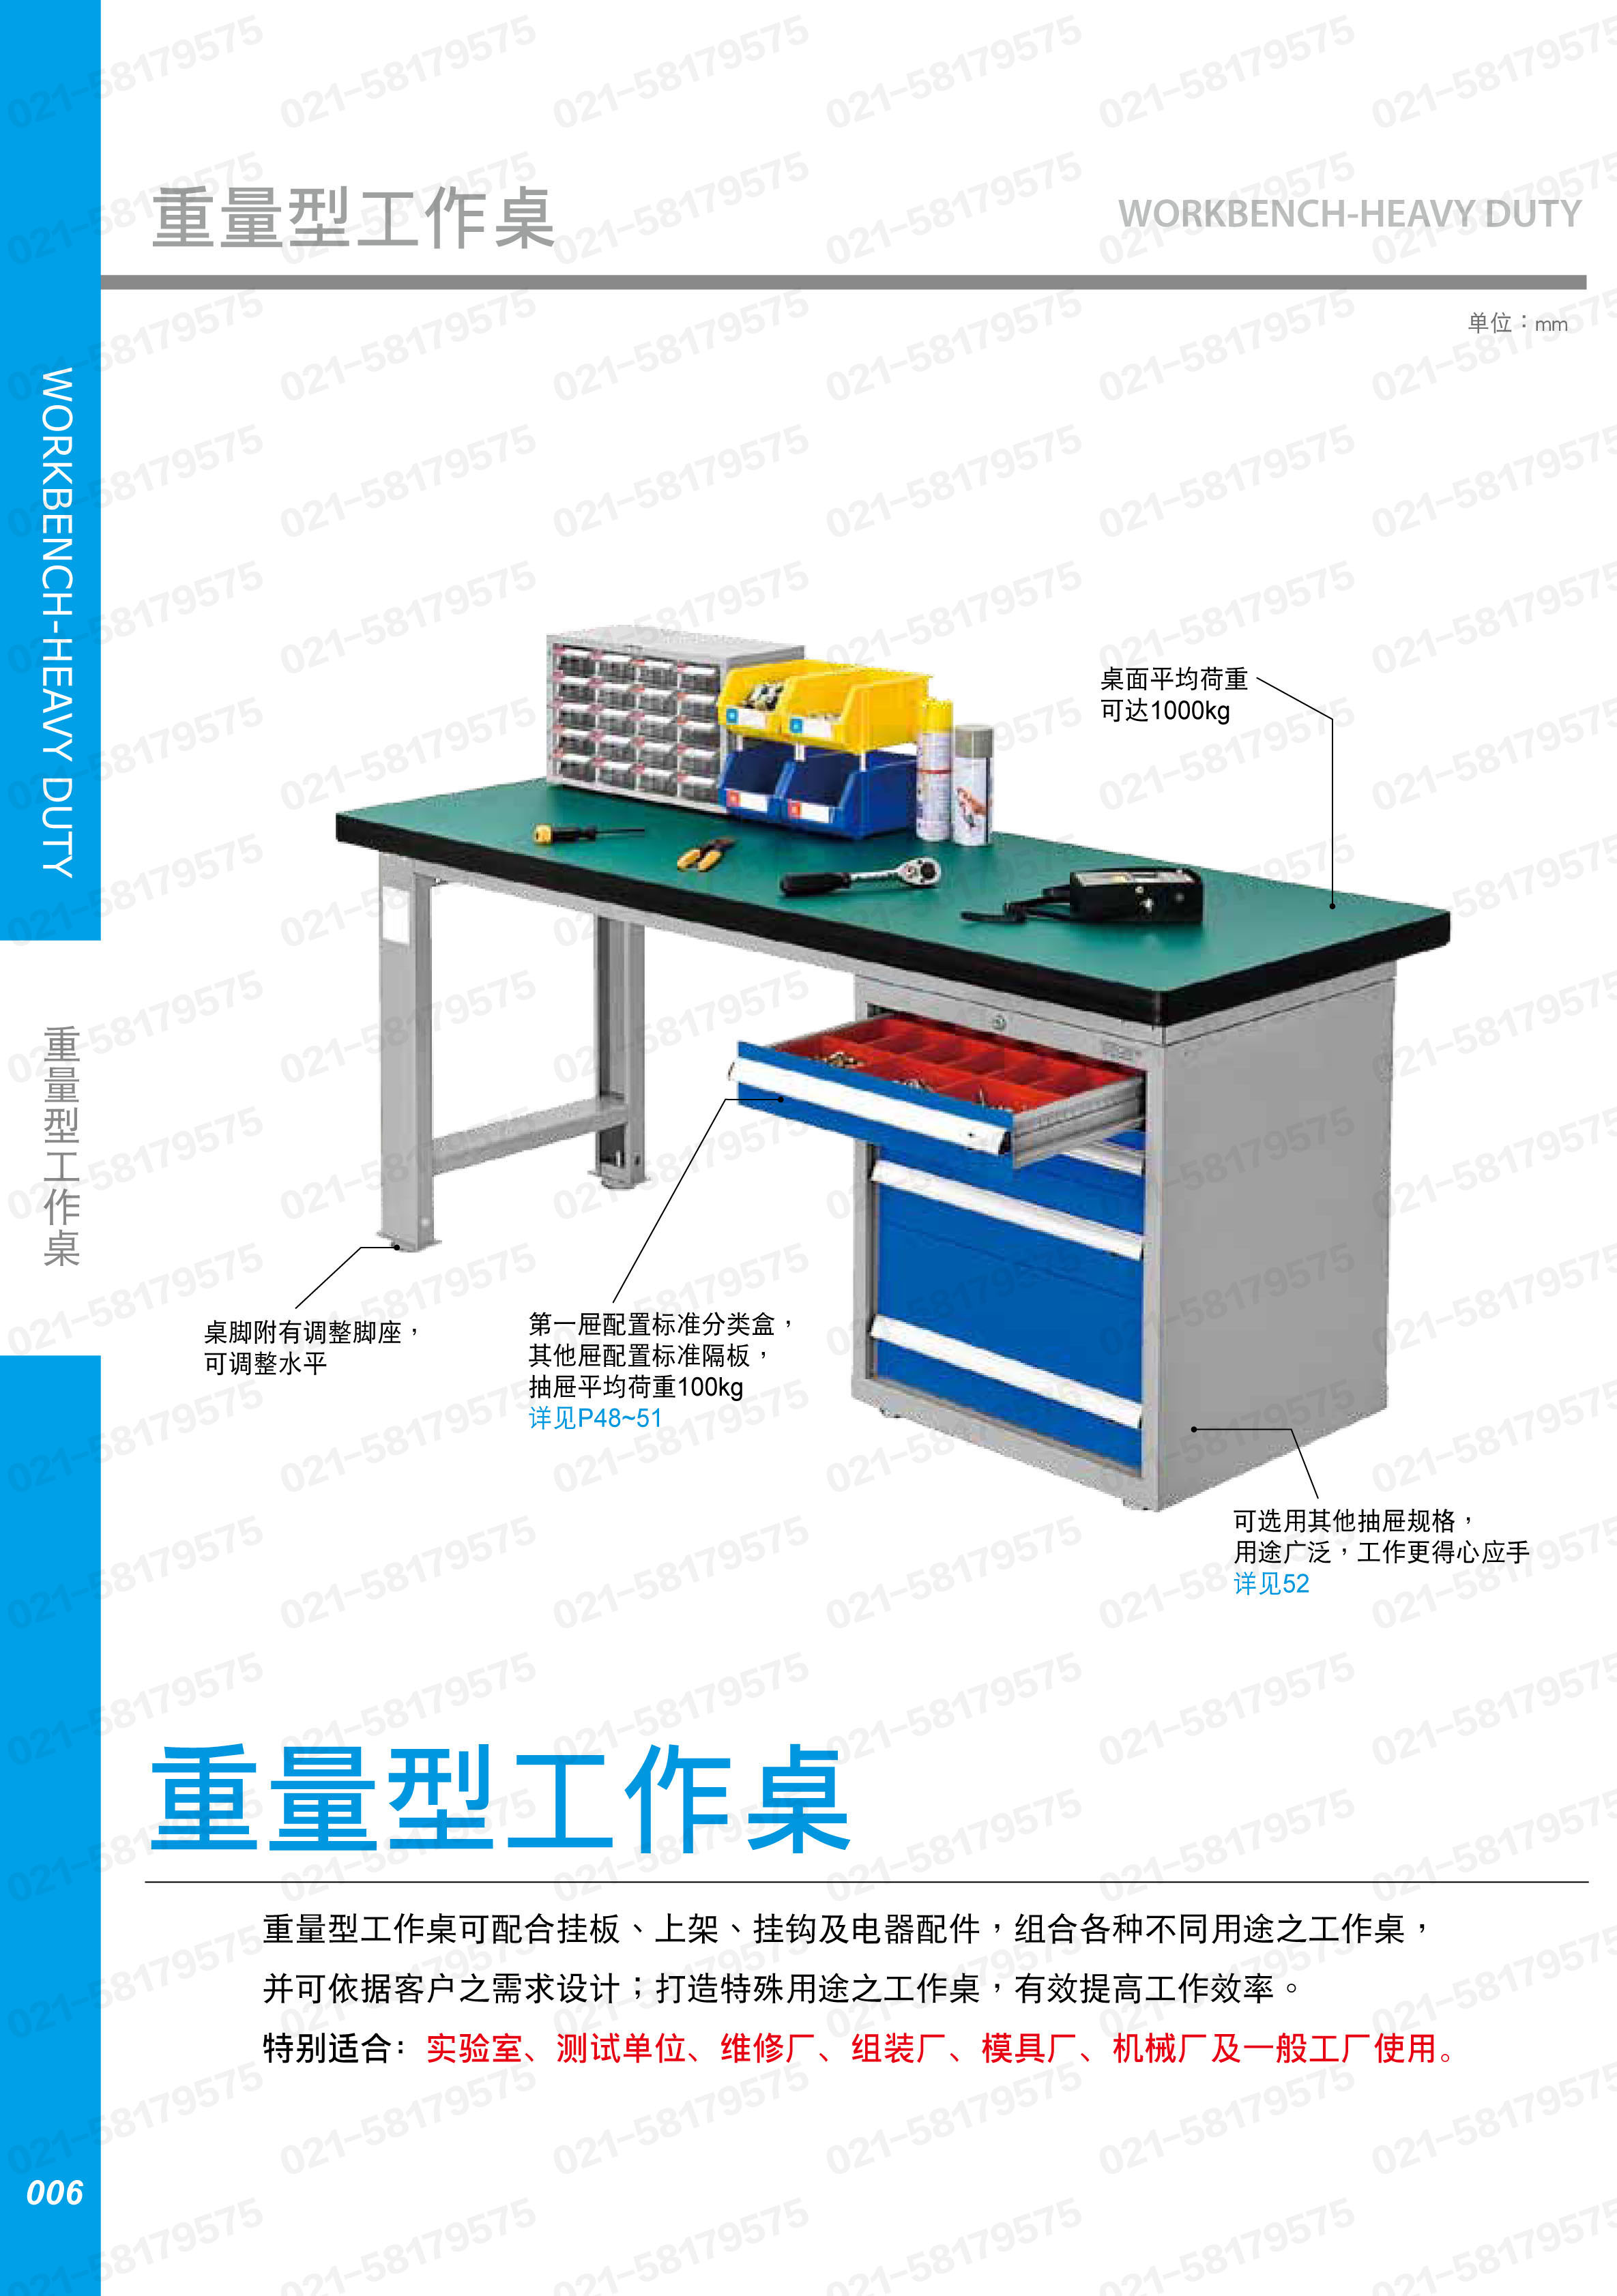 重型工作桌1500×750×800mm平均承重1吨原木桌板 横置3个抽屉,WAT-5203W,3M0881